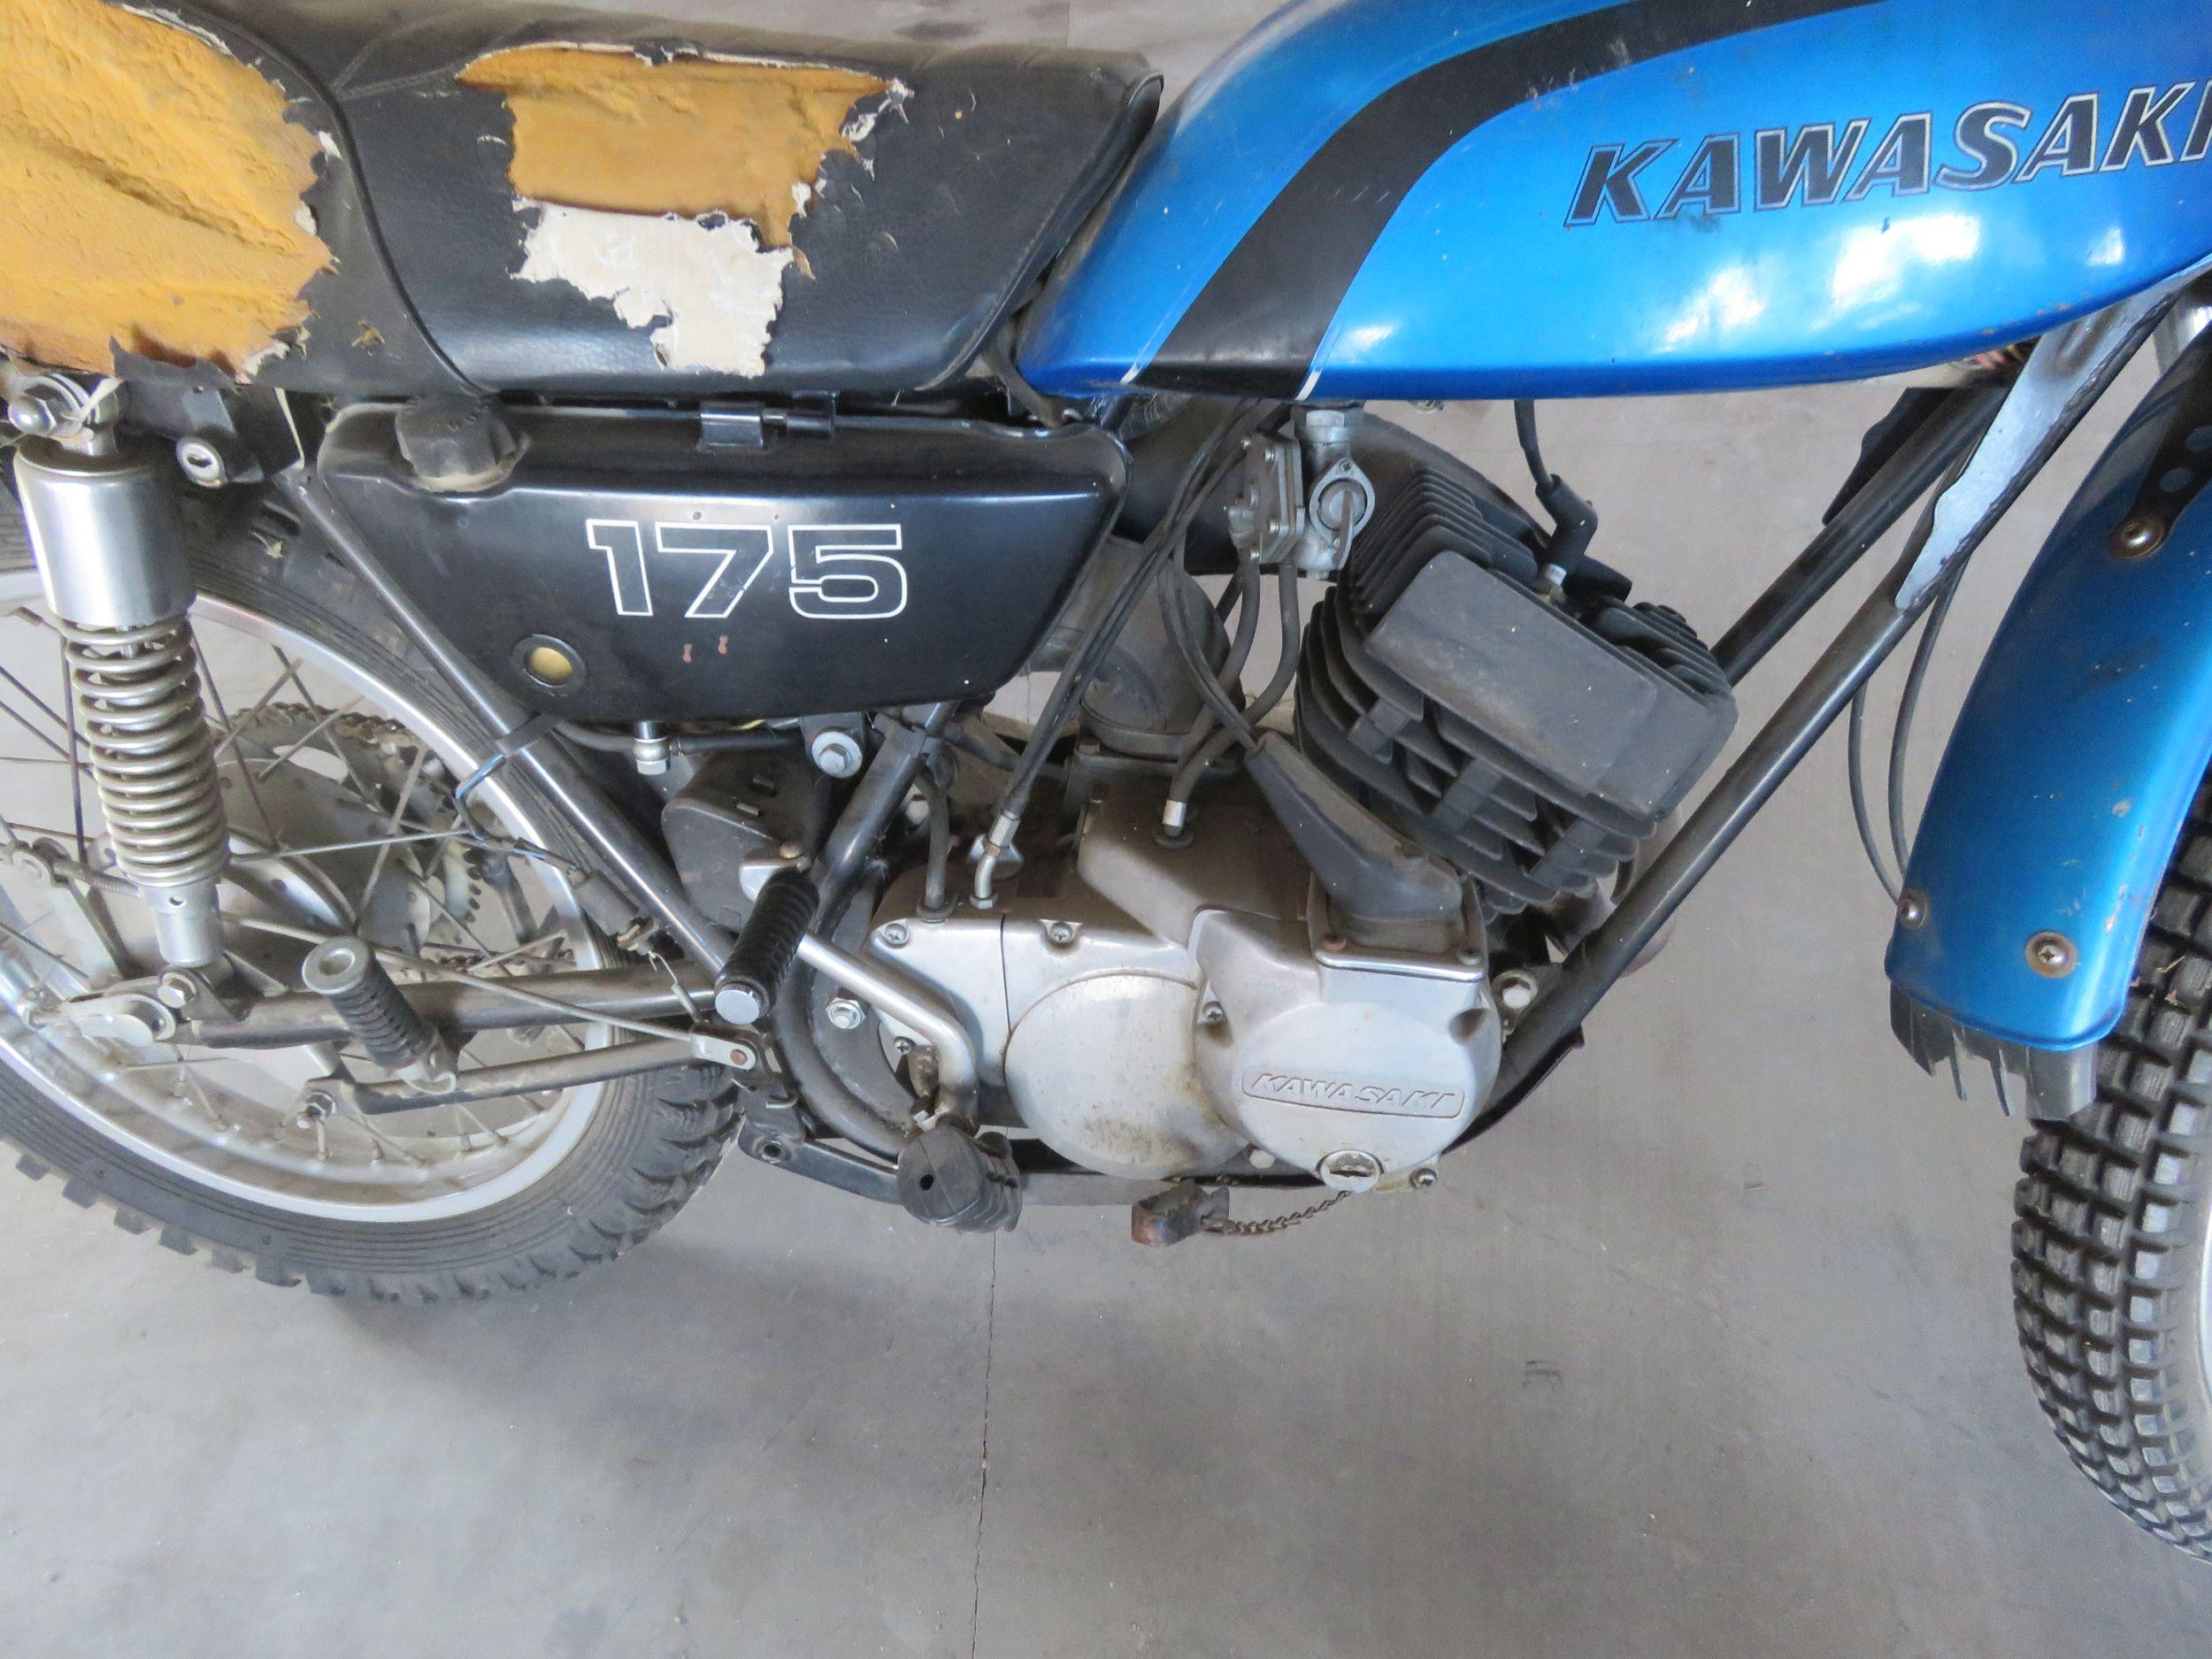 1973 Kawasaki 175 Motorcycle